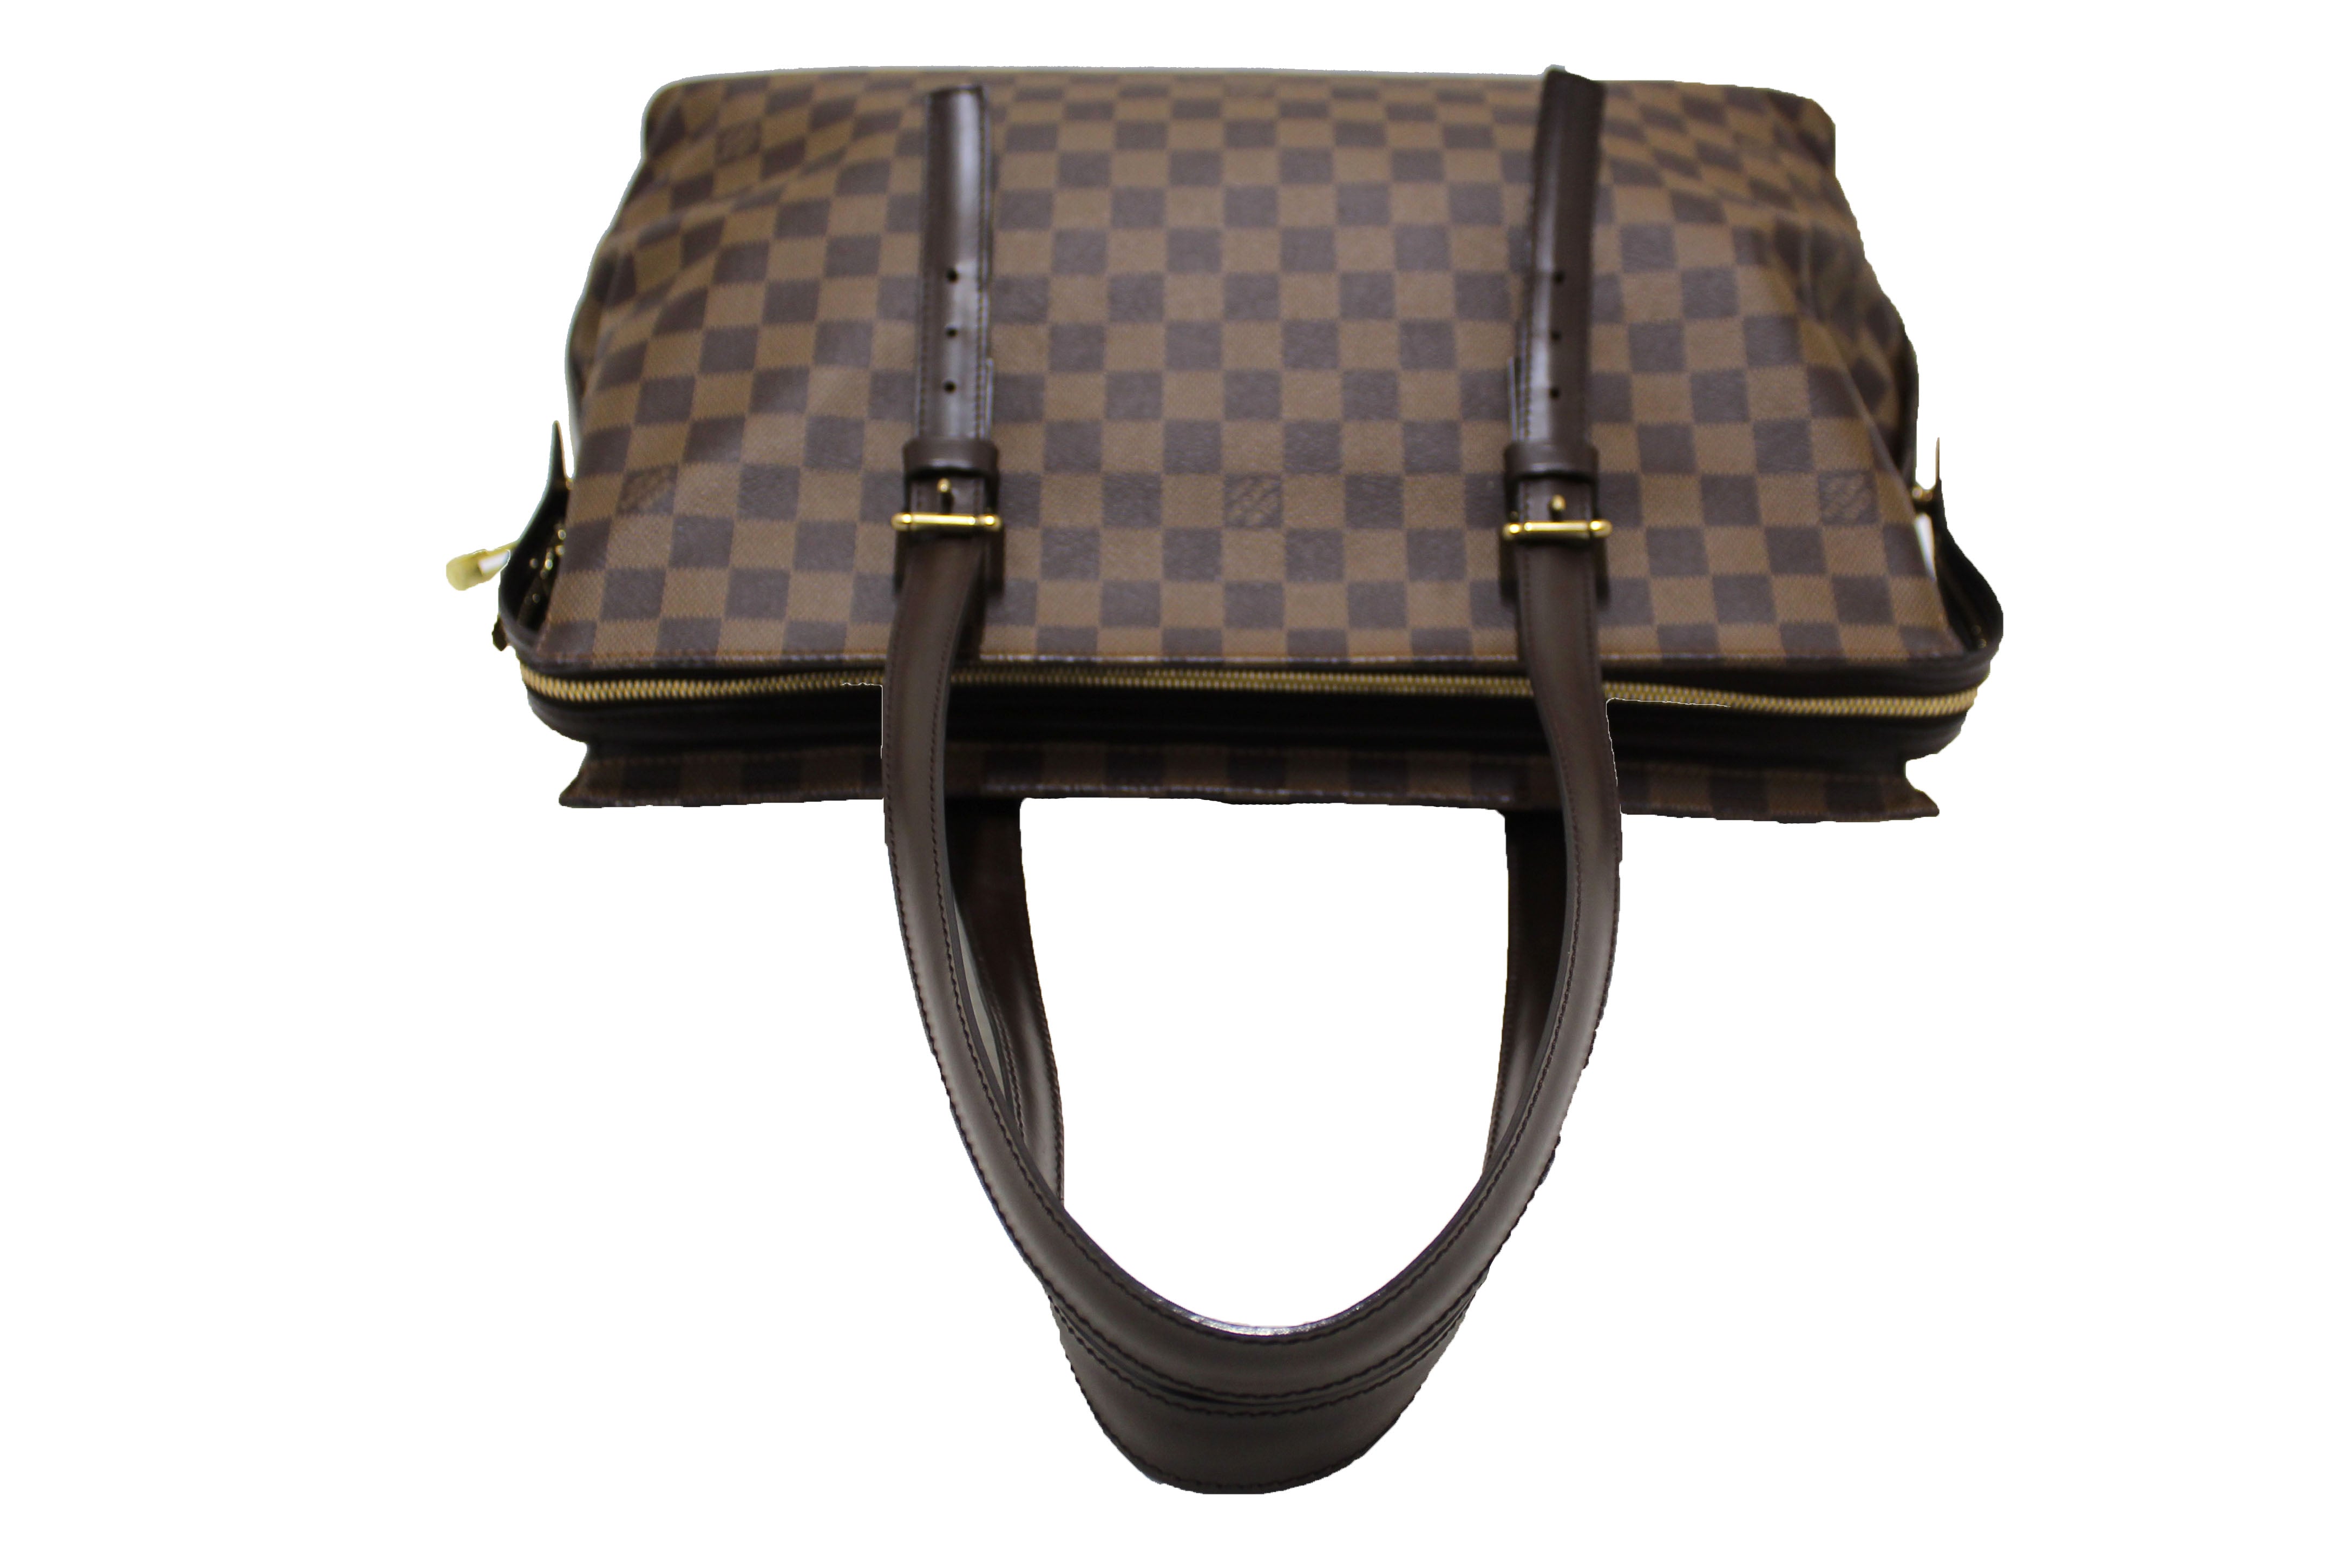 Louis Vuitton Damier Ebene Canvas Chelsea (Authentic Pre-Owned) - ShopStyle  Shoulder Bags